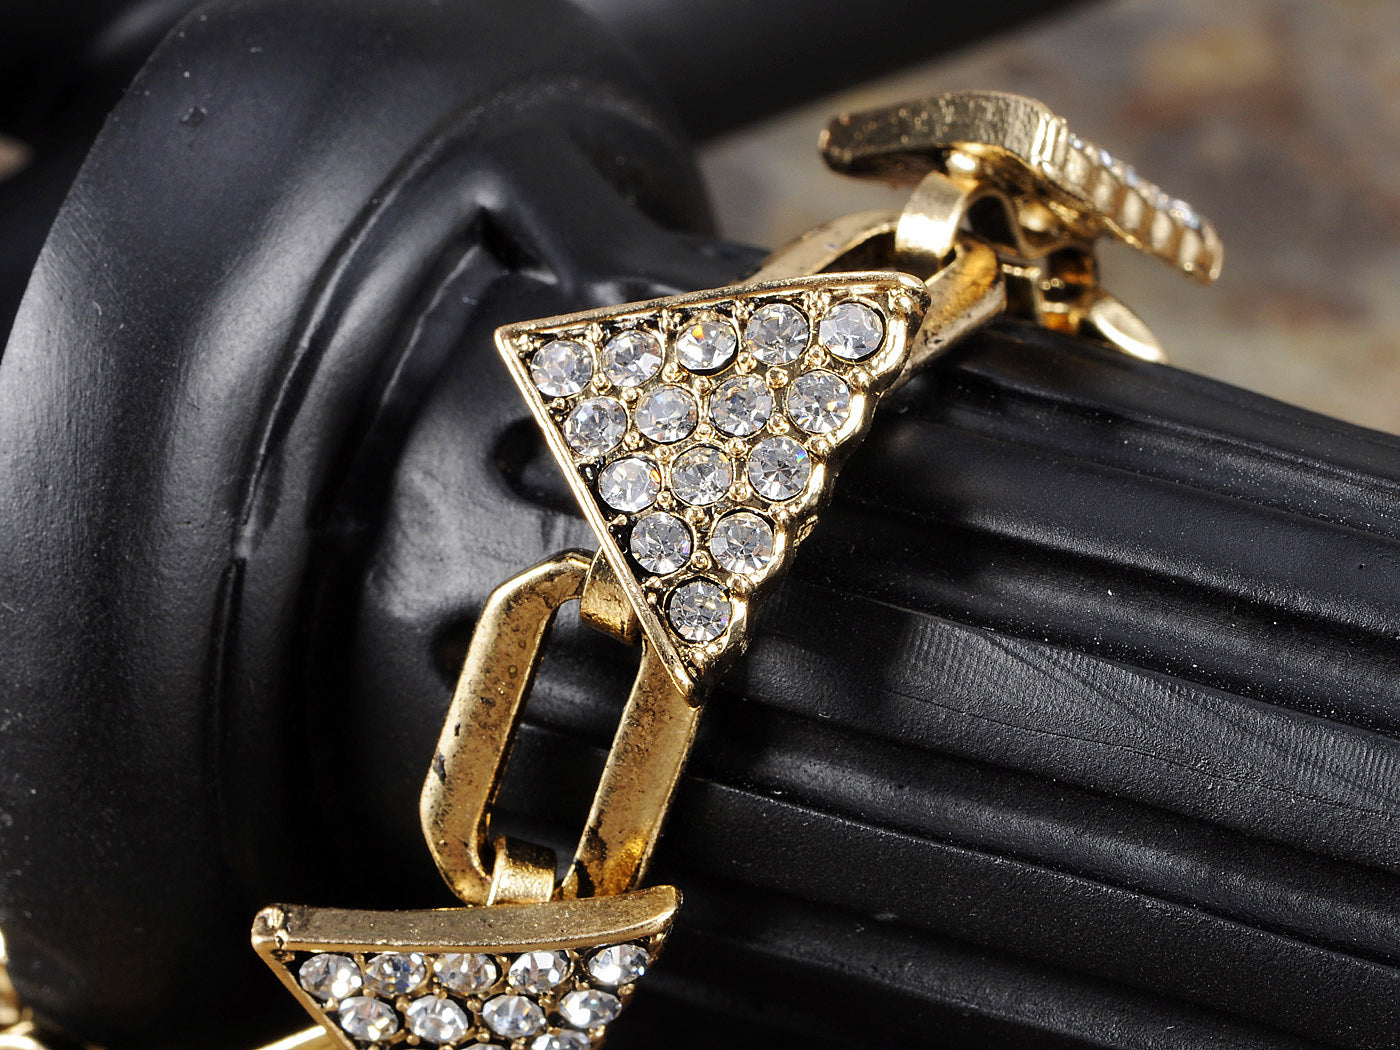 Retro Triangle Embellished Linked Pendant Chain Bracelet